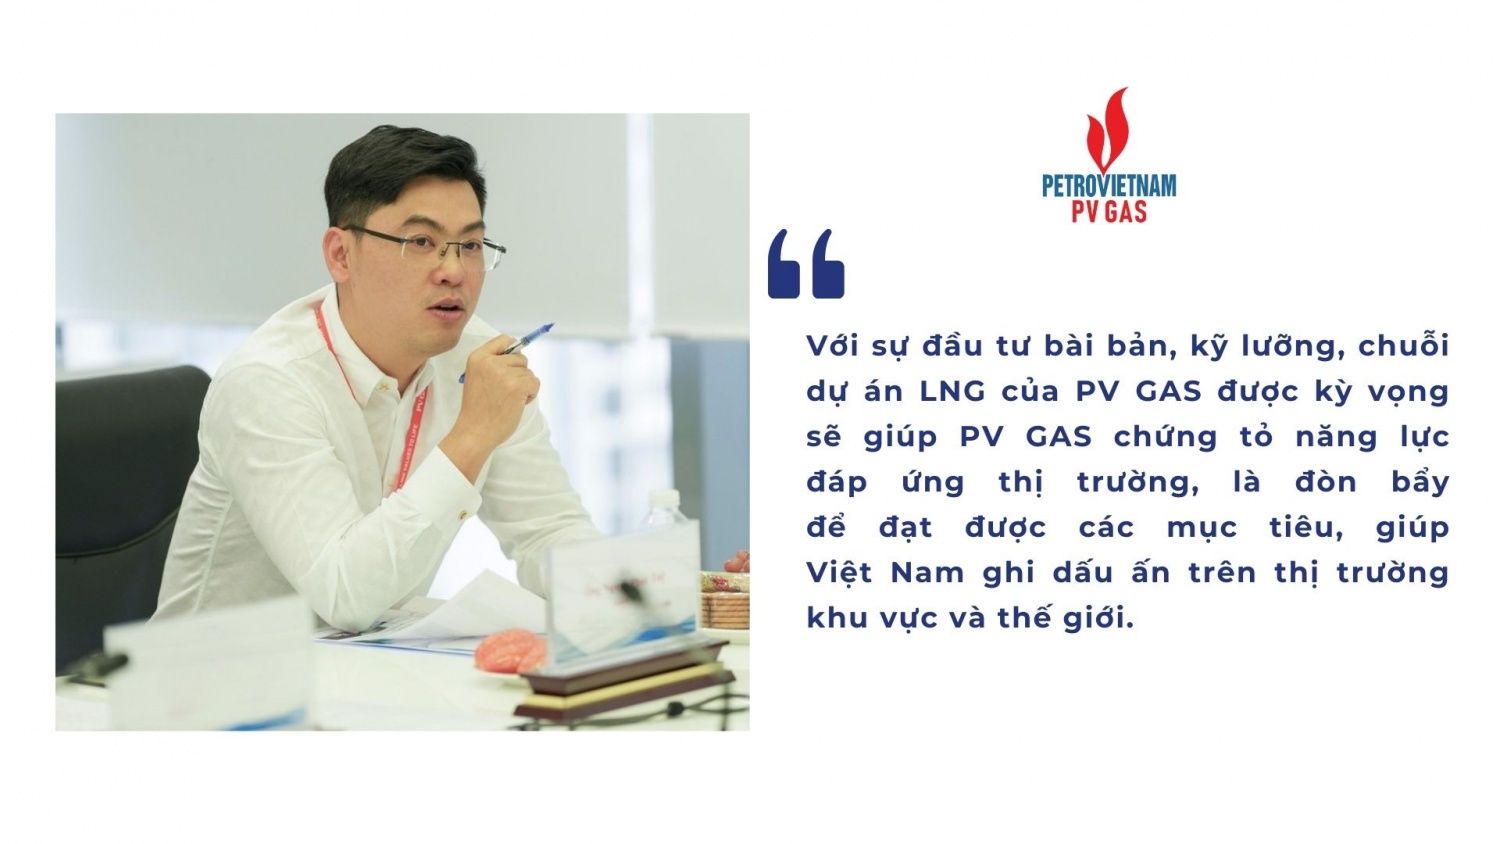 Phó Tổng Giám đốc Nguyễn Phúc Tuệ phát biểu về tiềm năng hoạt động kinh doanh LNG của PV GAS trong tương lai